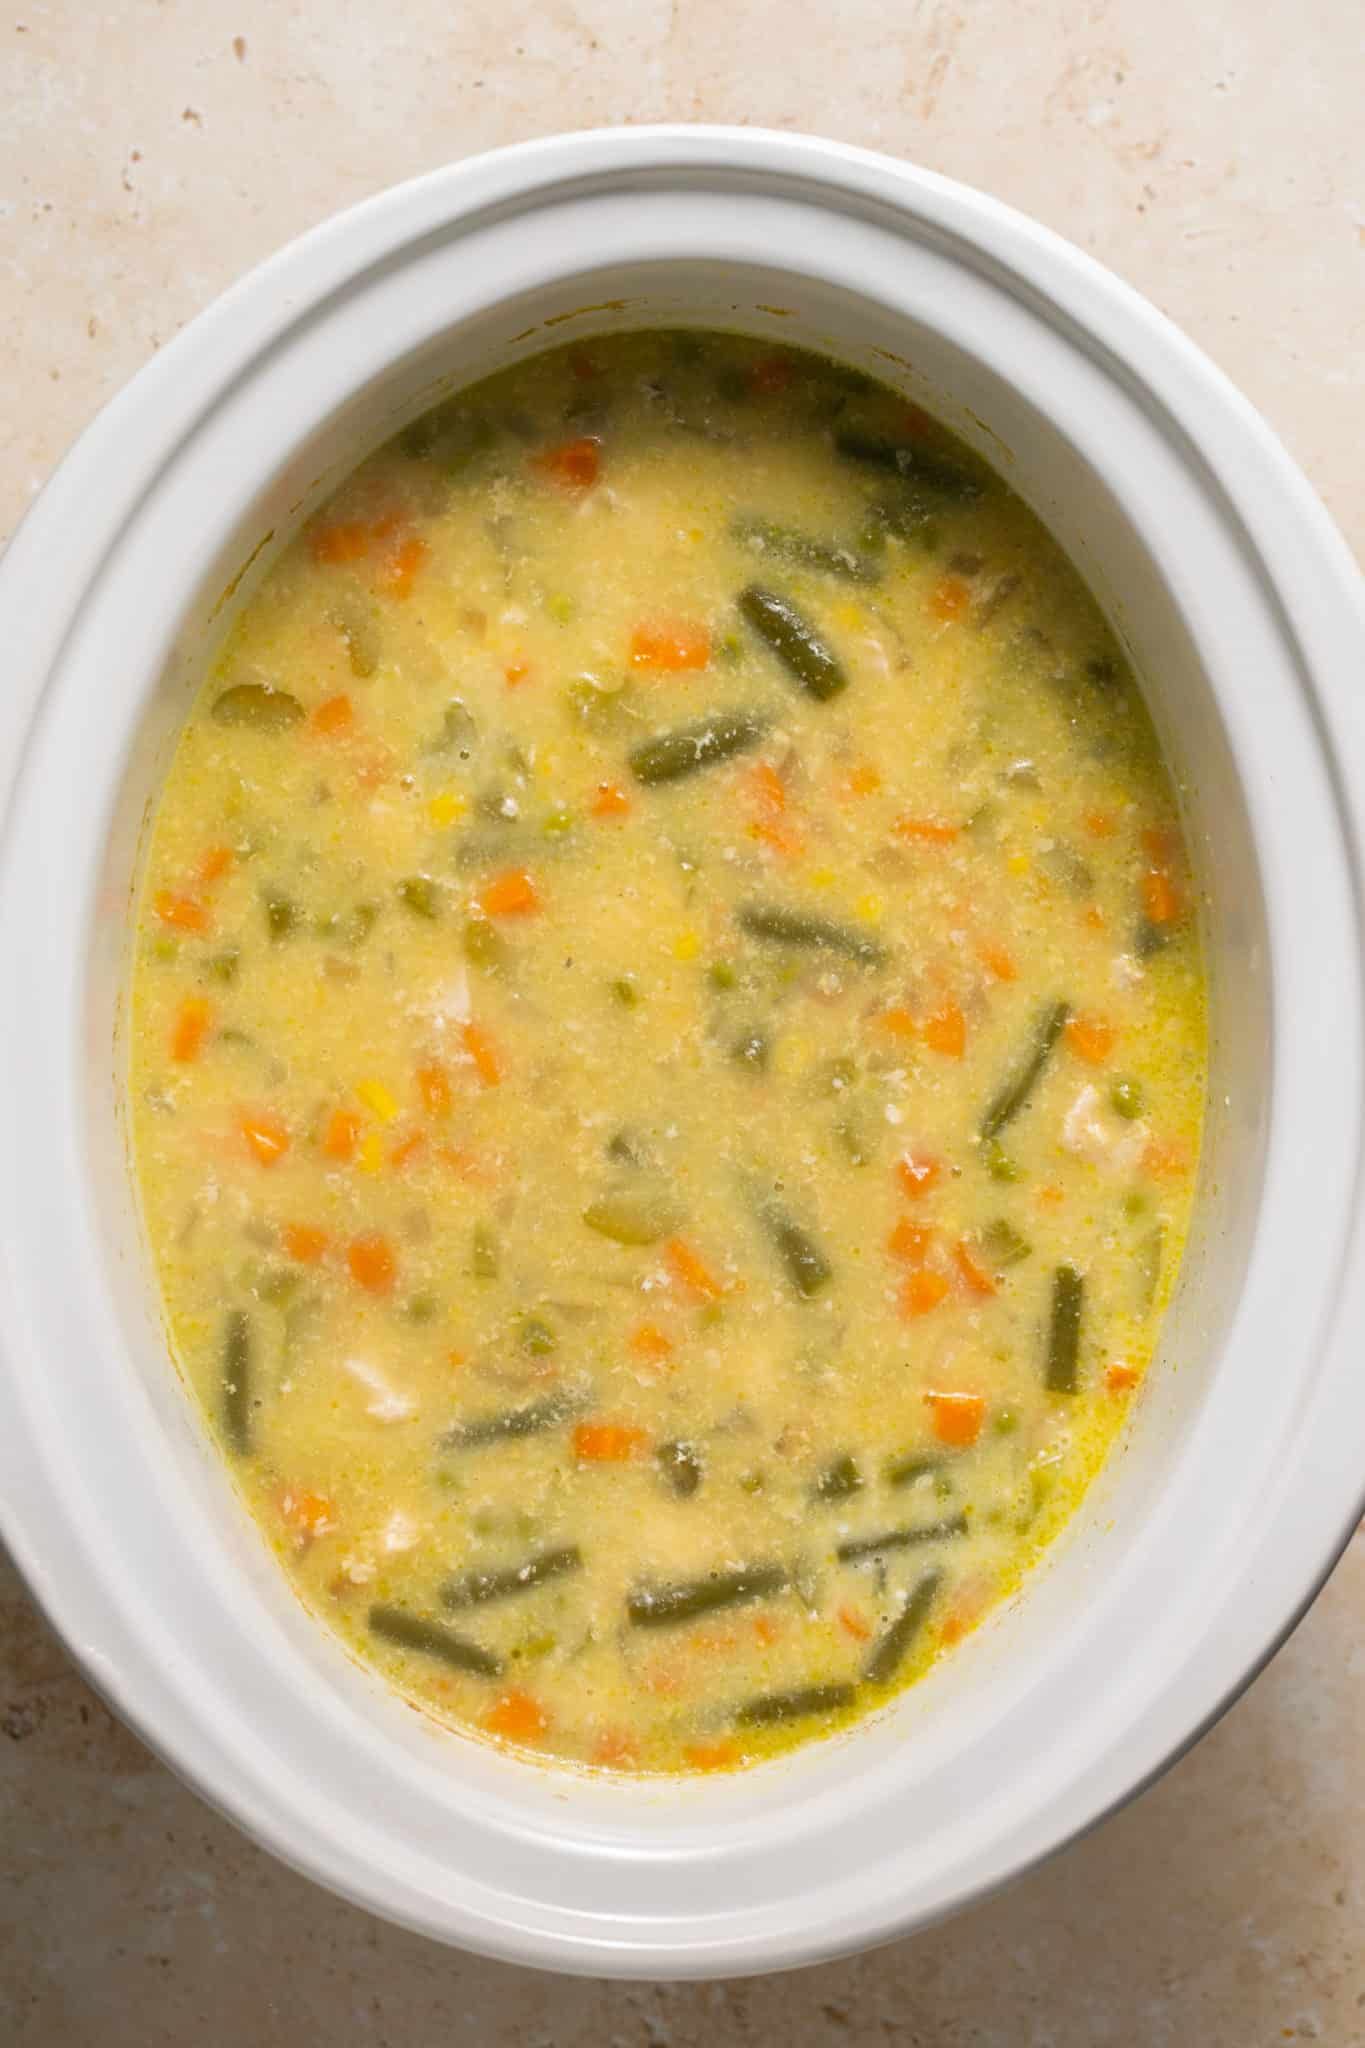 soup in a white crock pot.